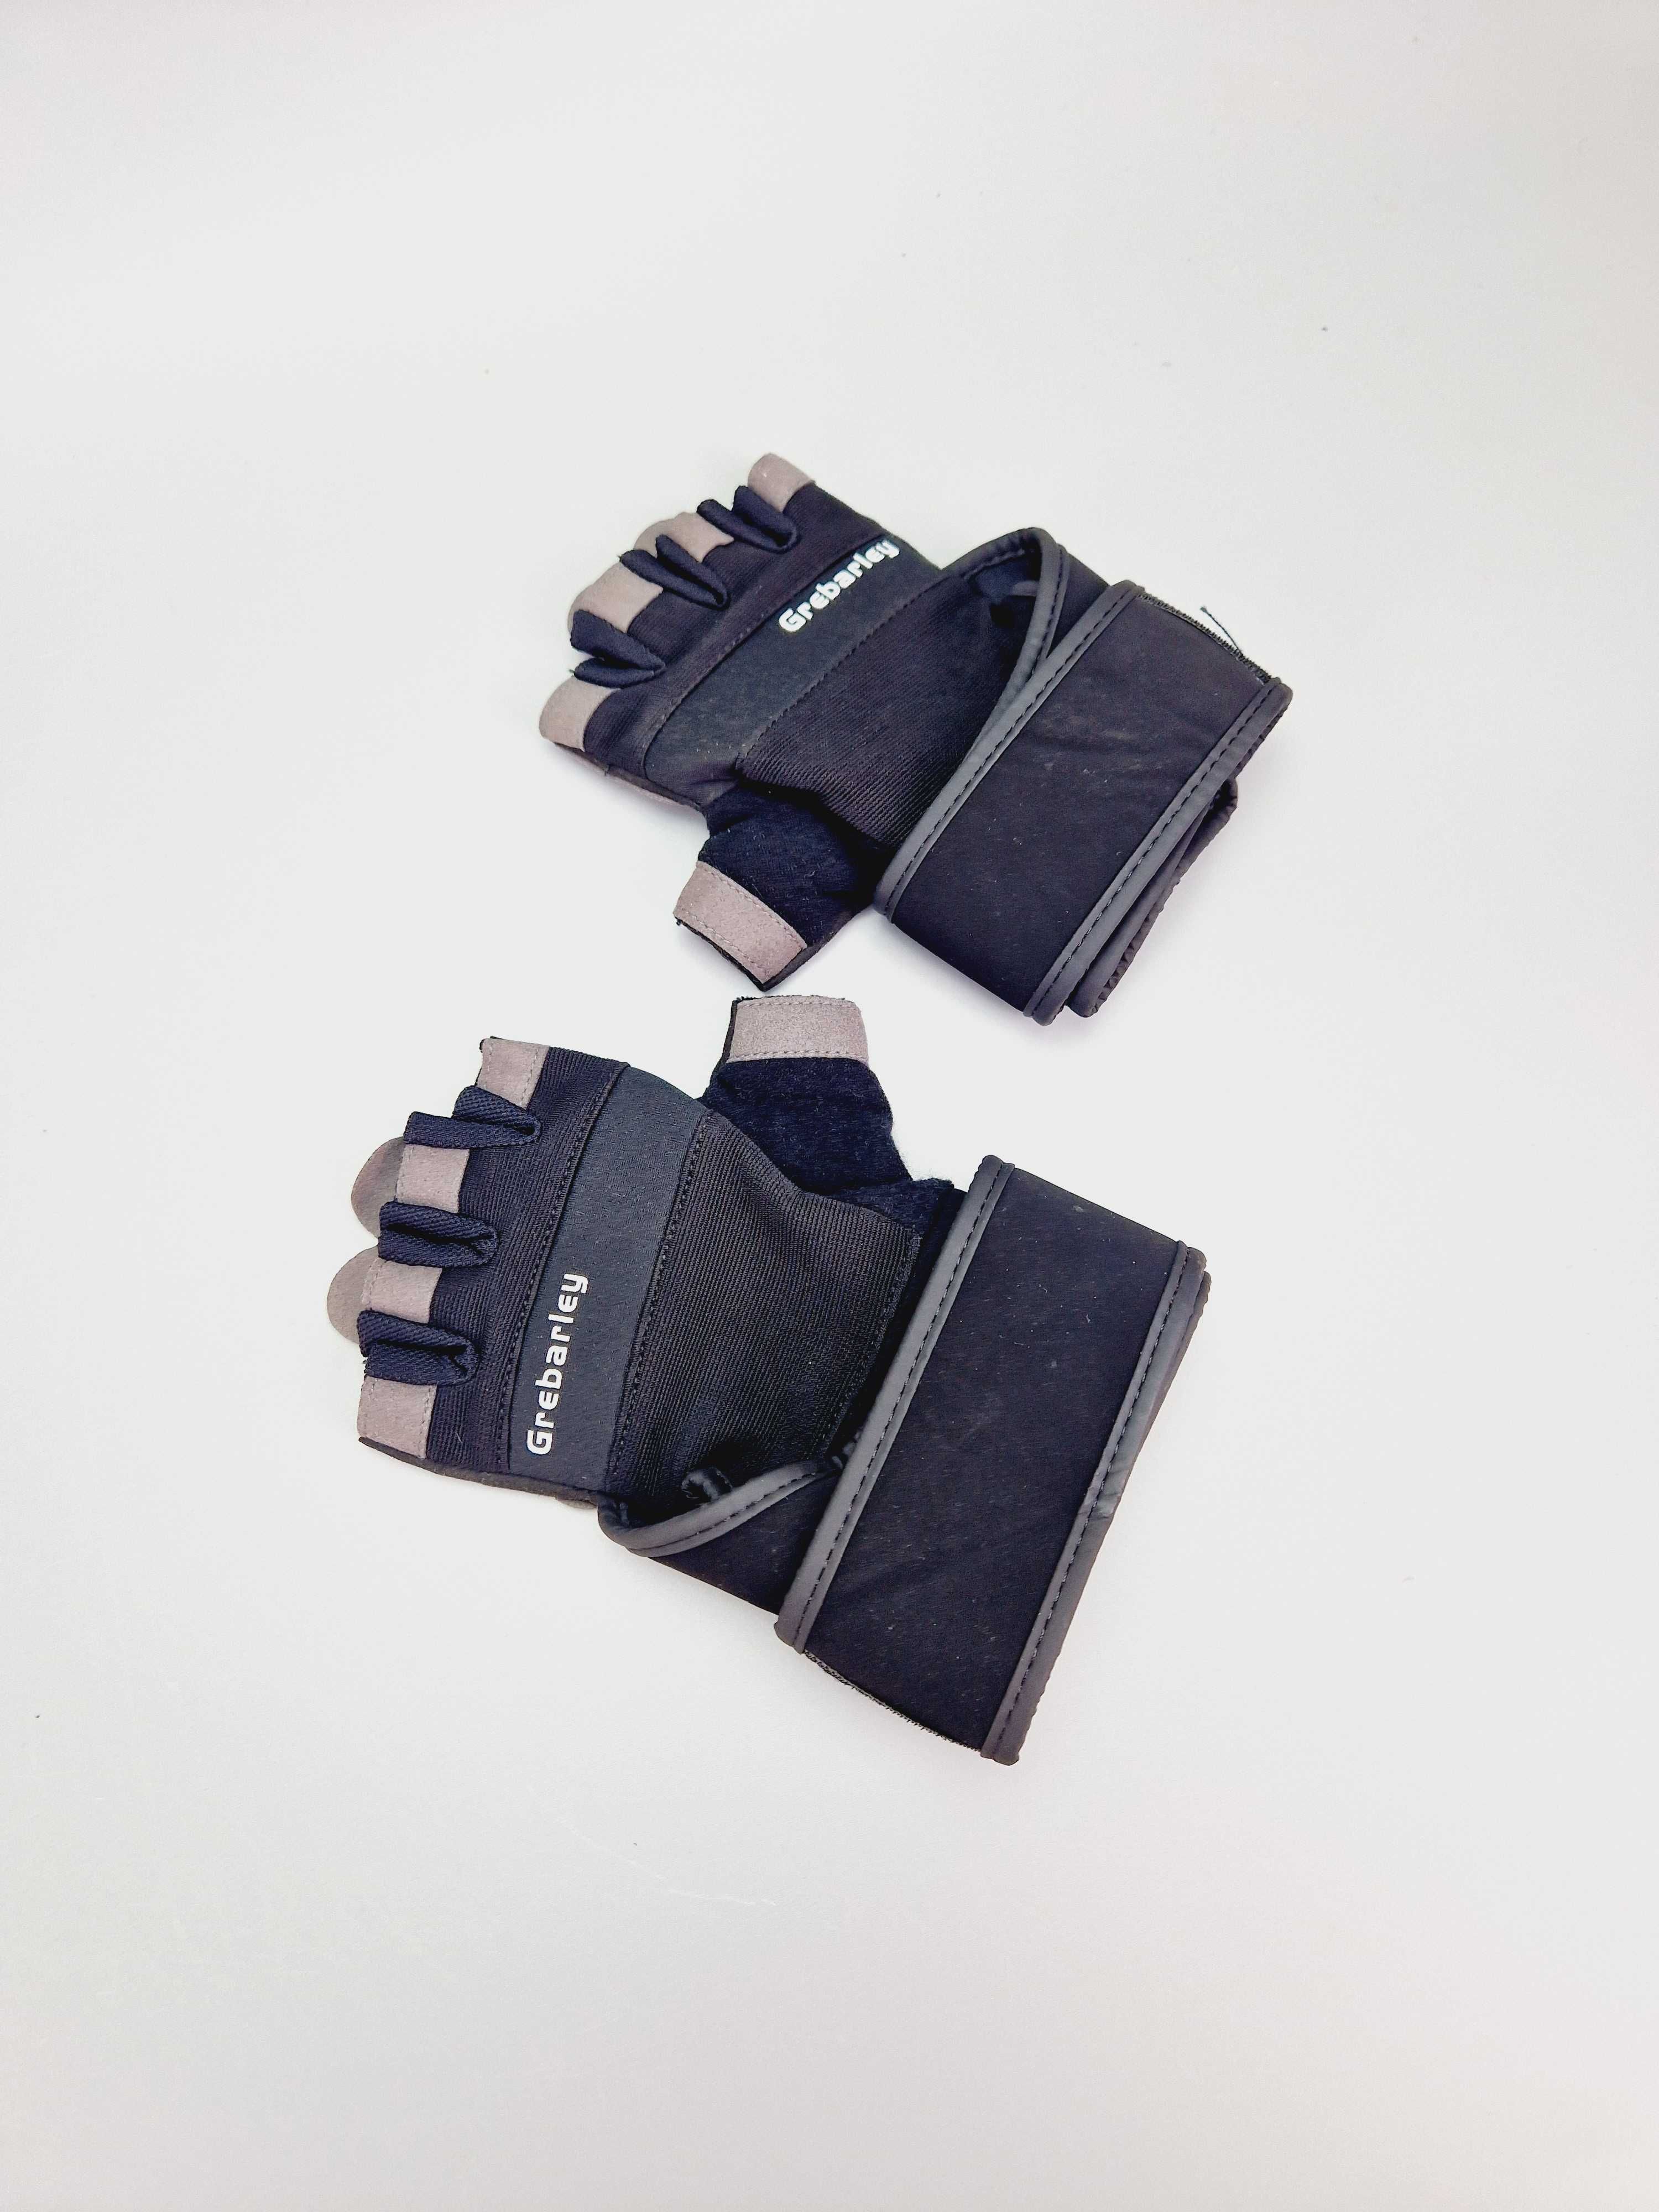 Rękawiczki treningowe sportowe GREBARLEY roz. M